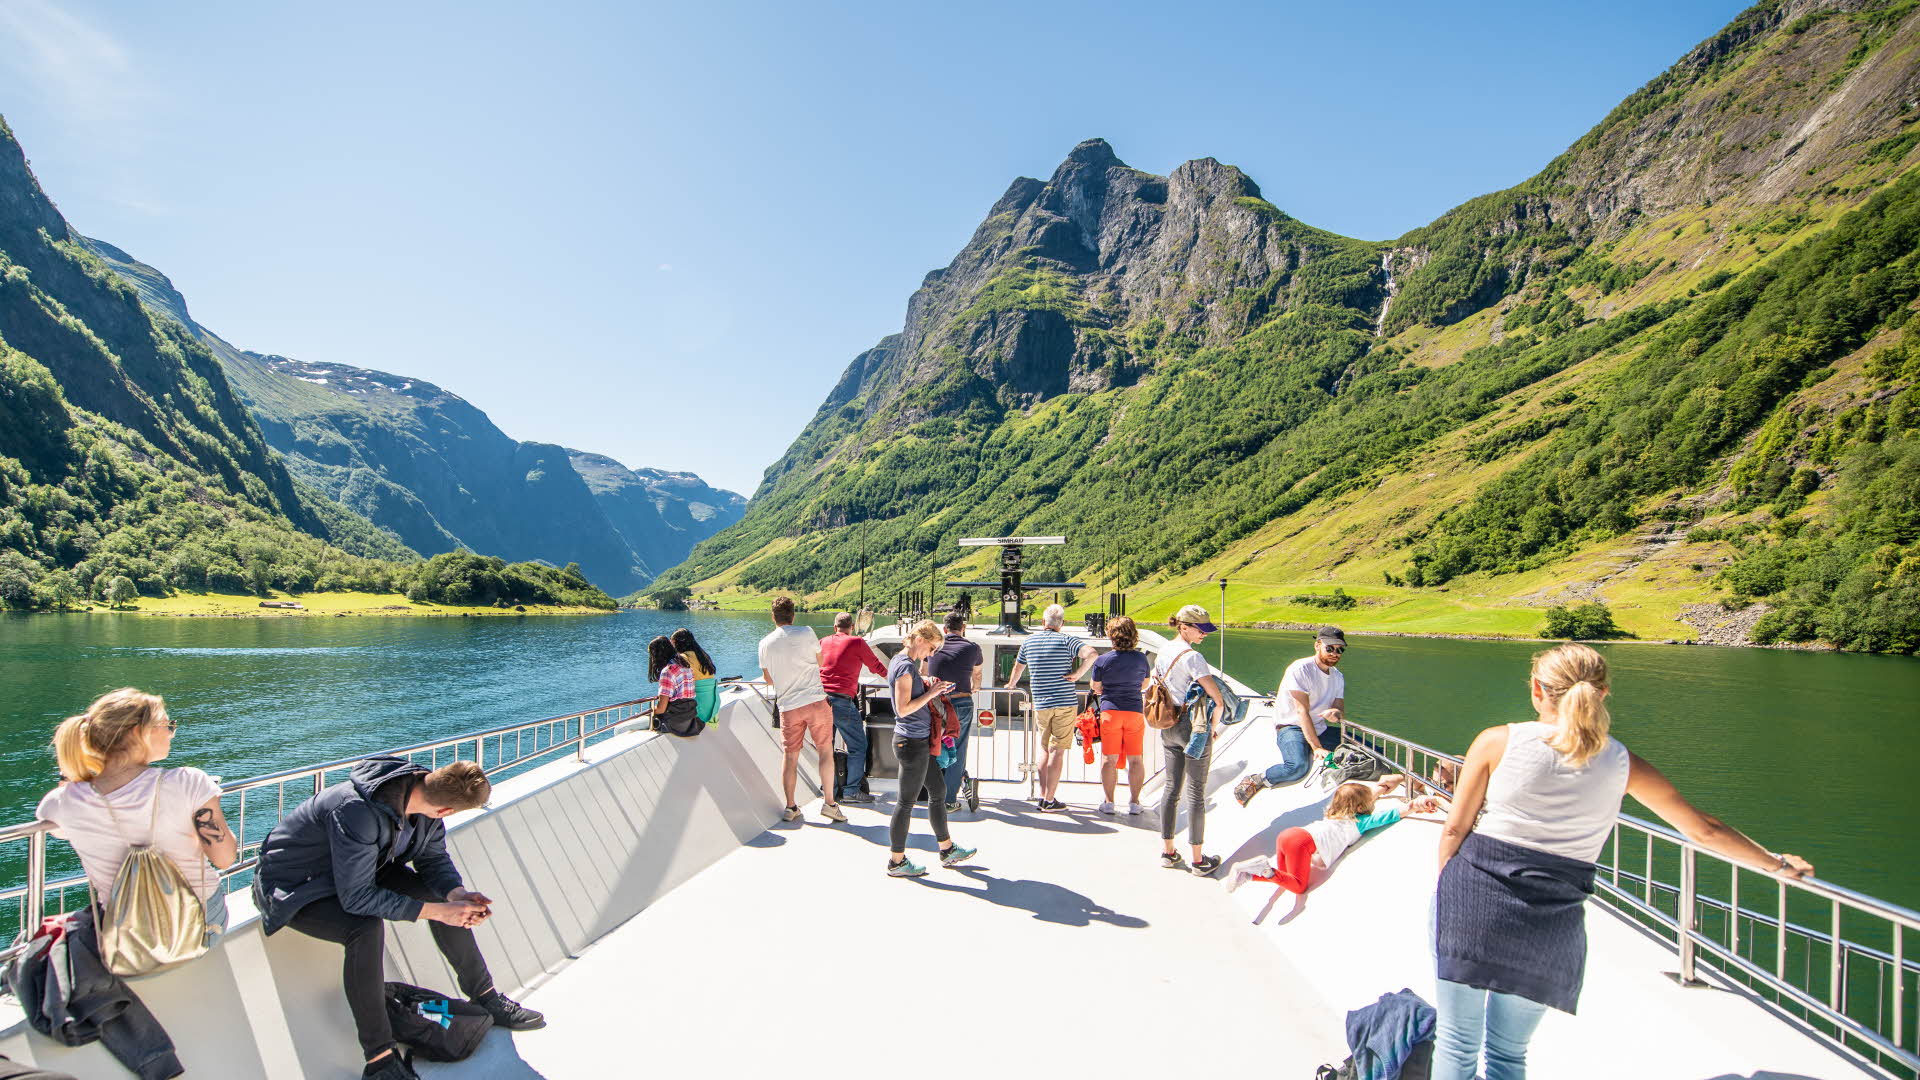 Personnes profitant de la vue depuis le pont supérieur du bateau Future of the Fjords, naviguant sur le Nærøyfjord (inscrit au patrimoine mondial de l’UNESCO) en plein été